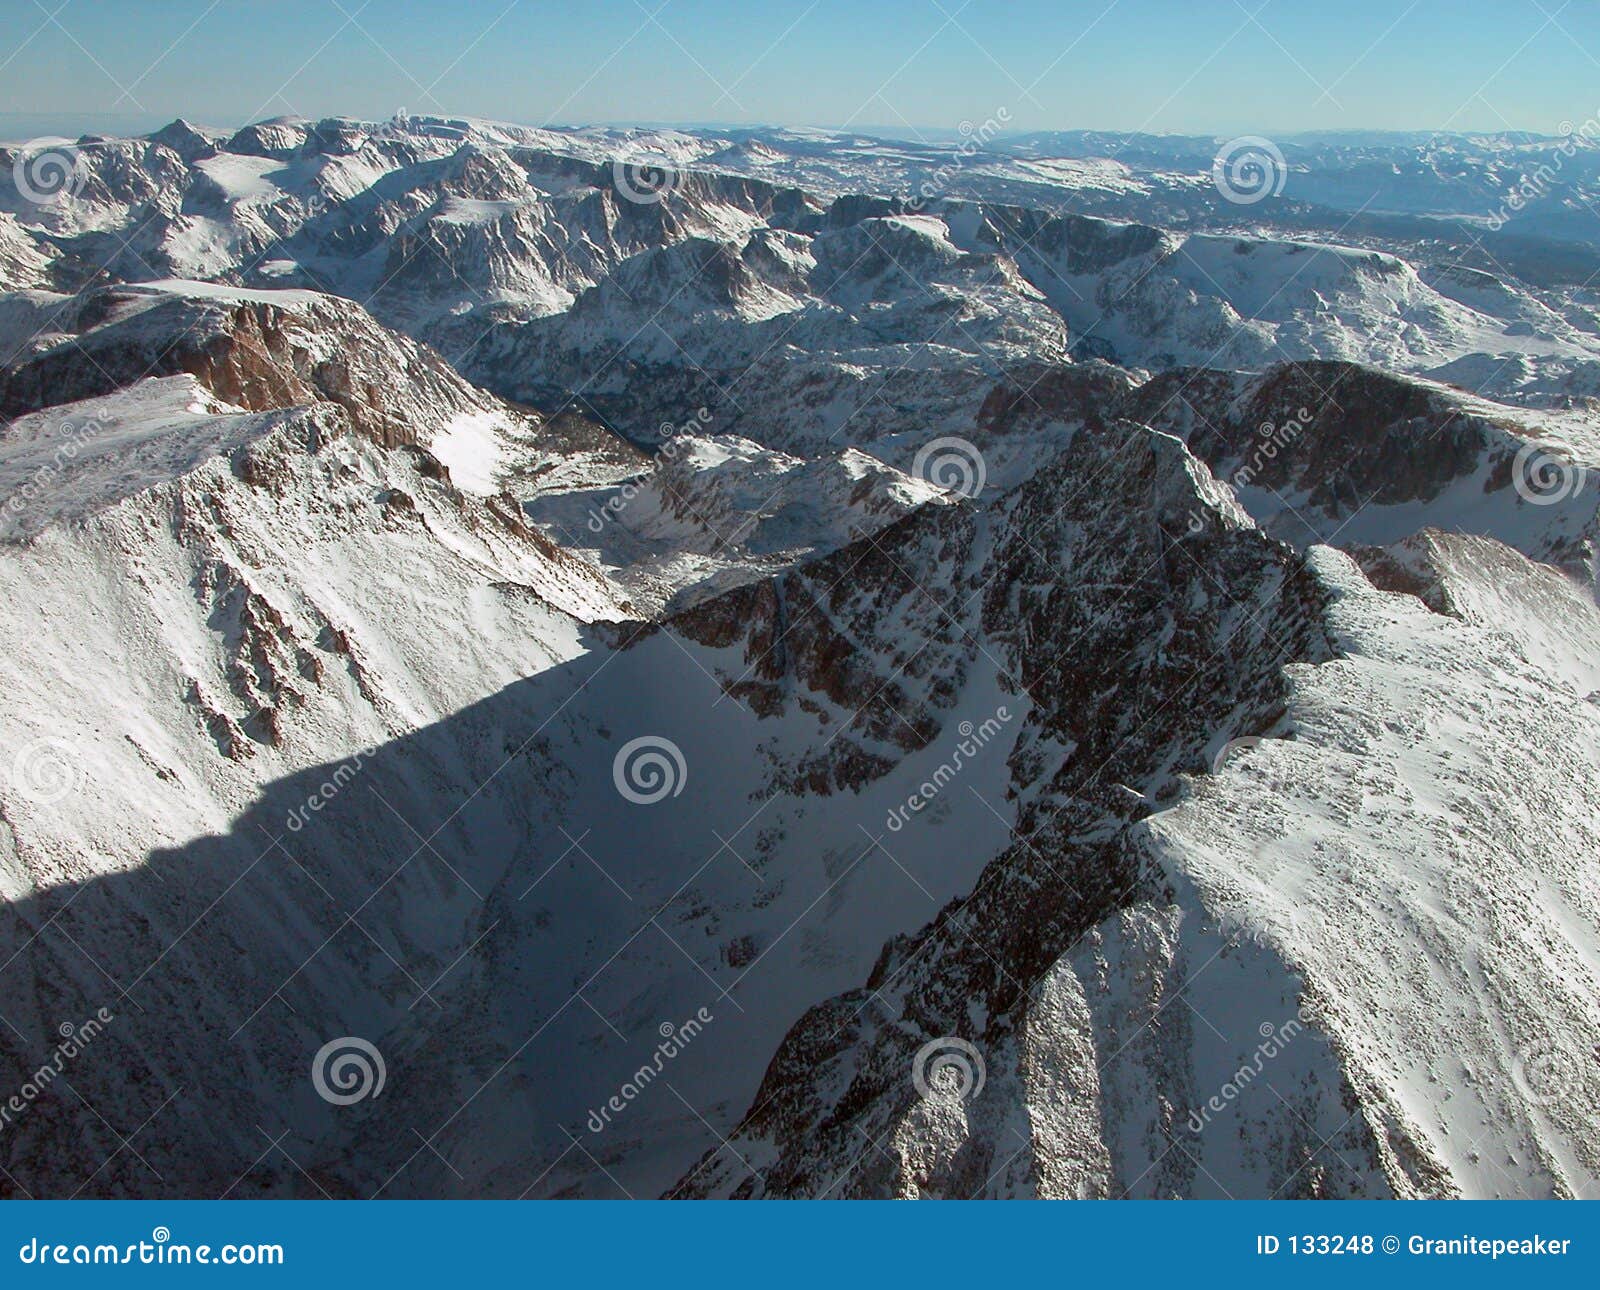 aerial of granite peak and tempest mountain